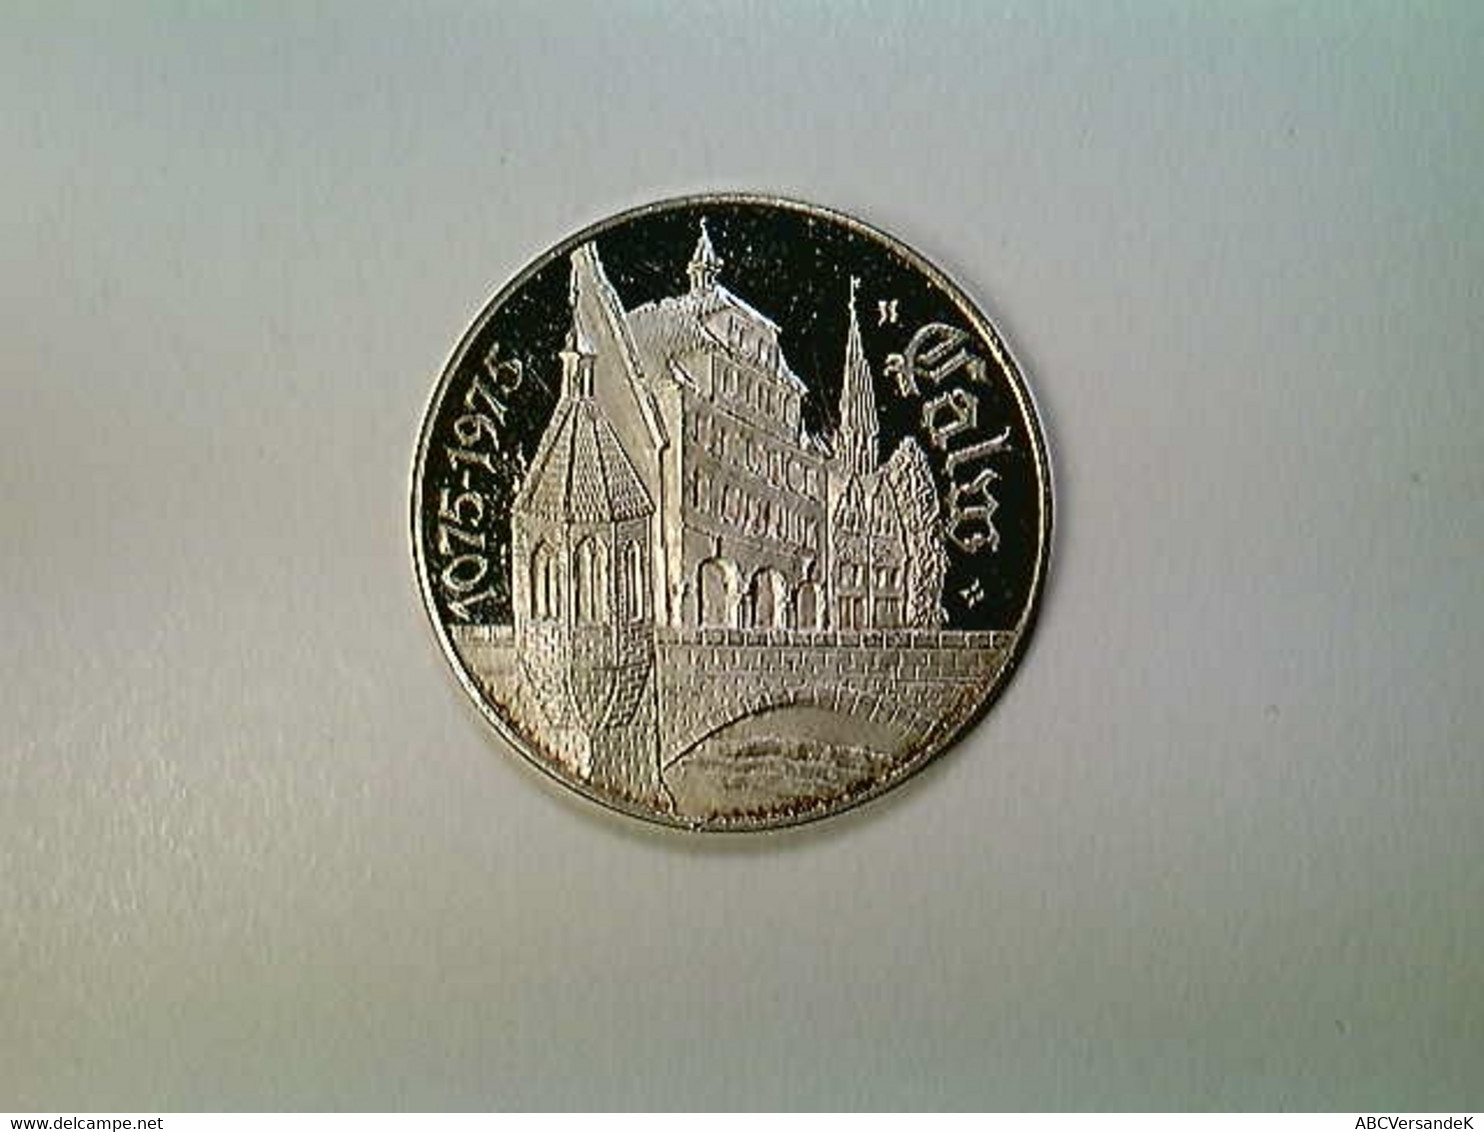 Medaille Calw, 900 Jahre 1075-1975, Silber 999 - Numismatique